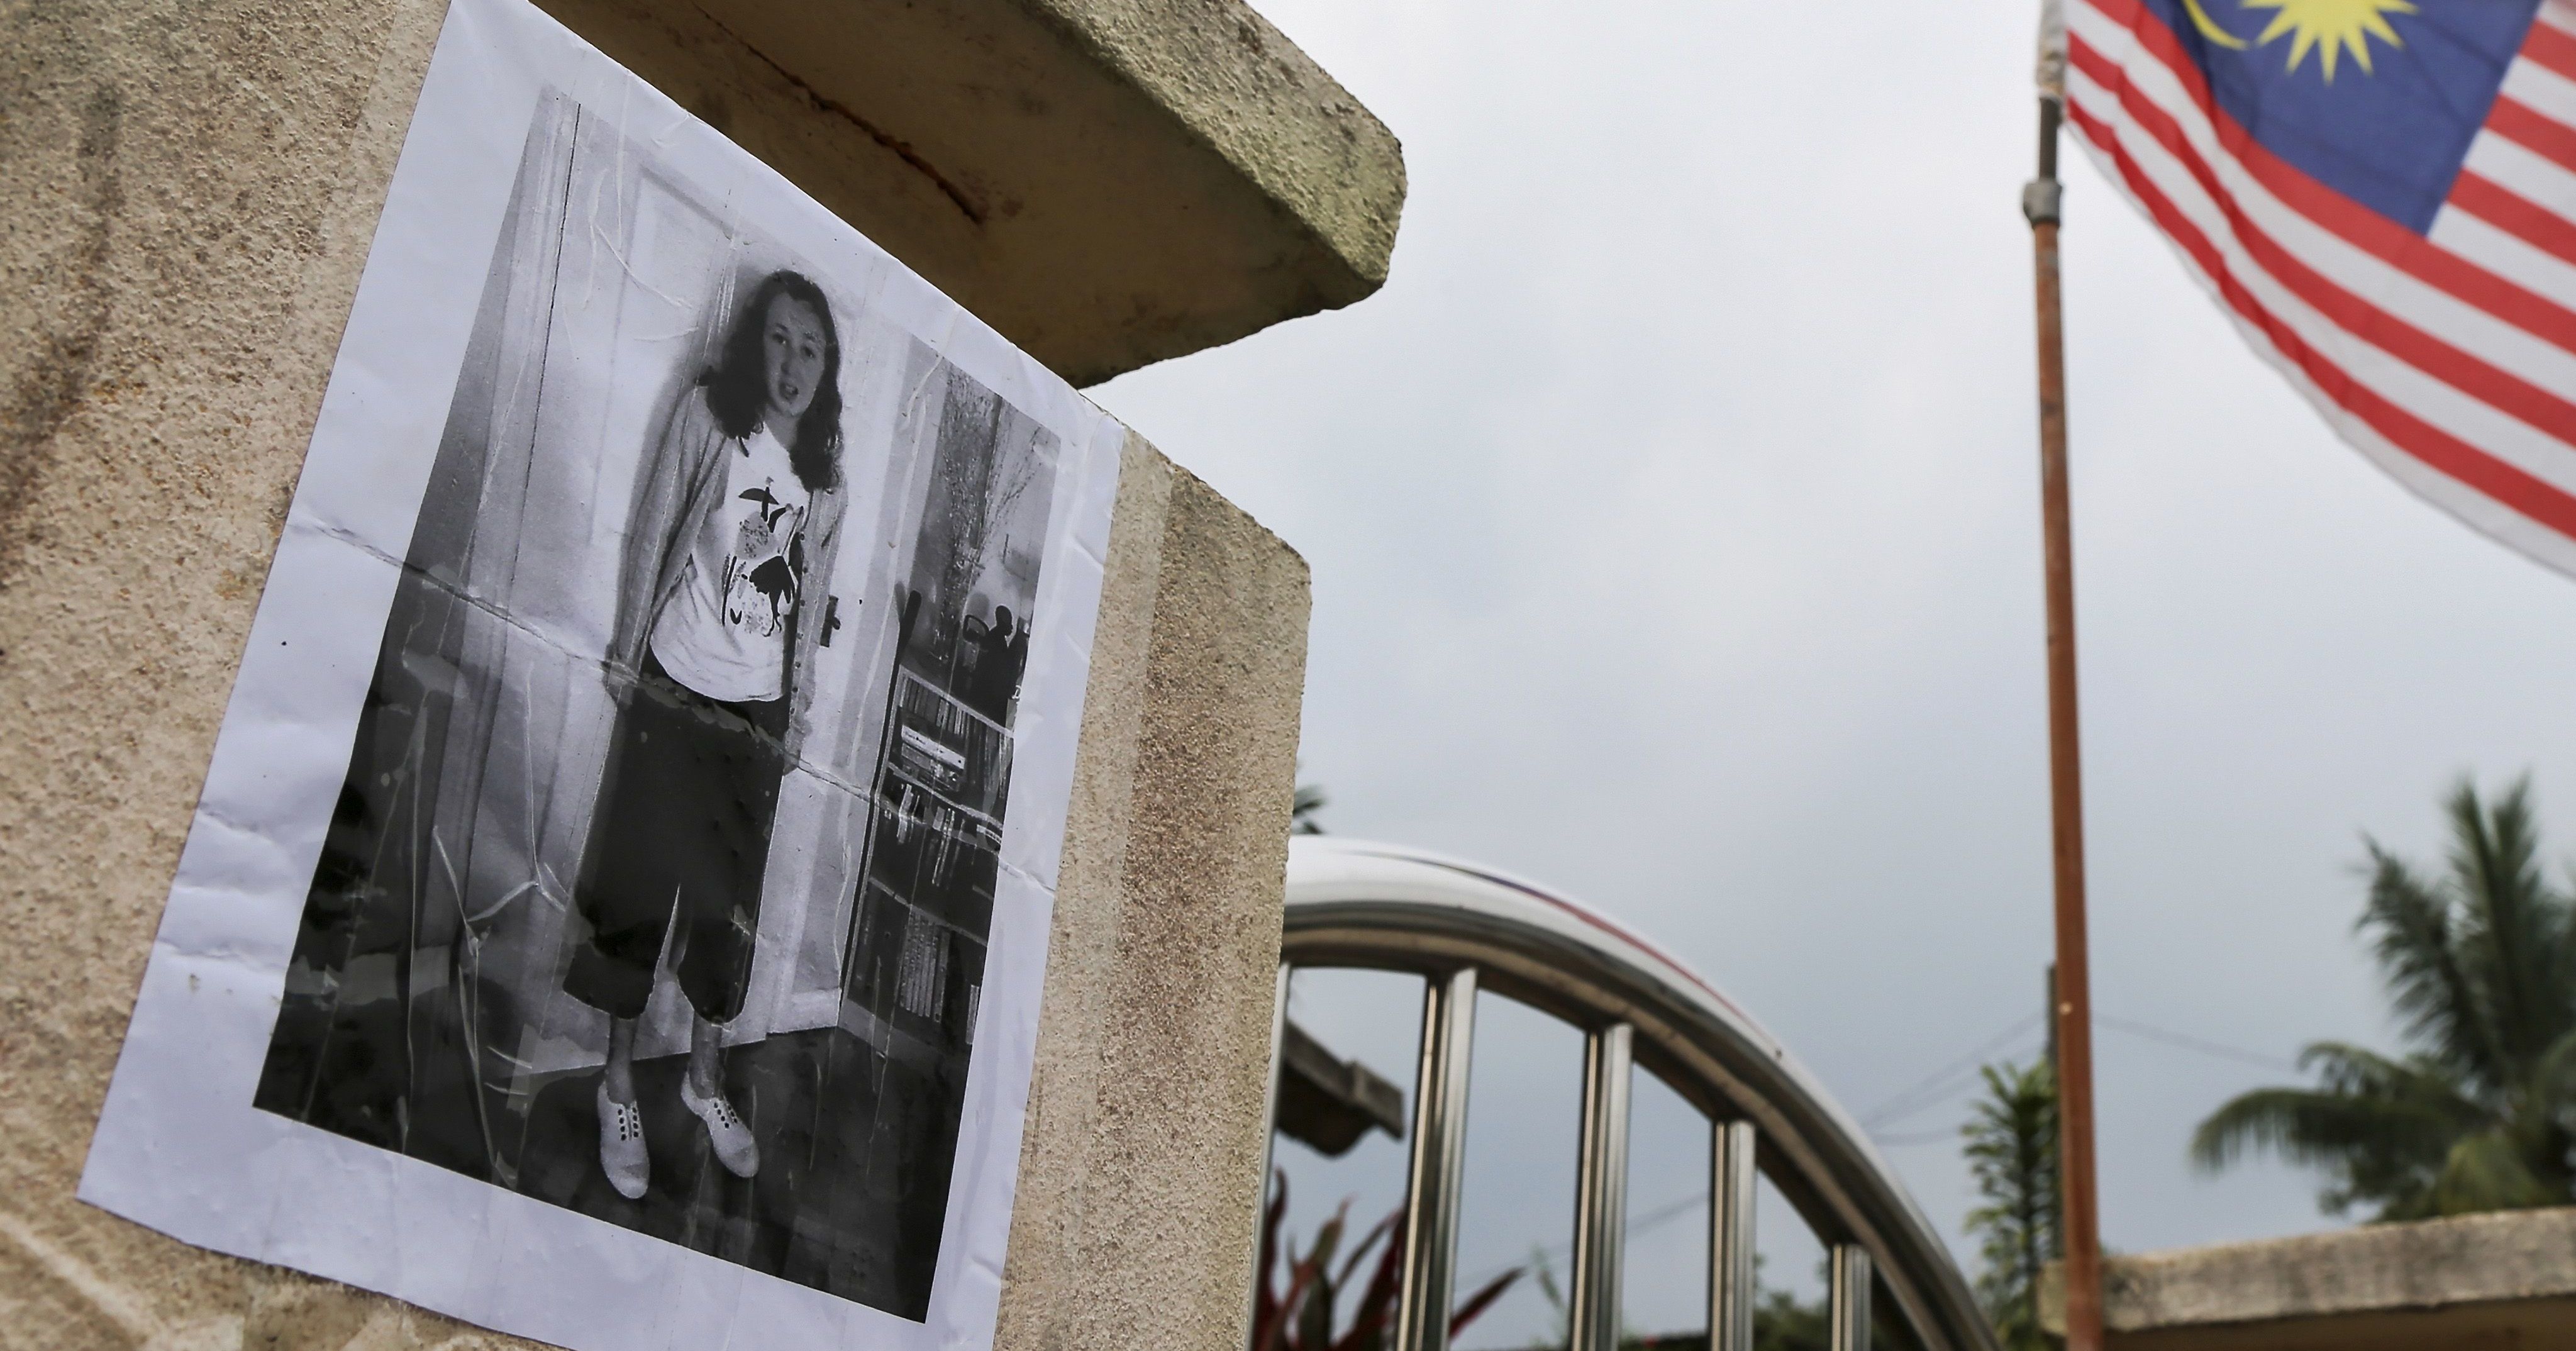 В Малайзии при загадочных обстоятельствах исчезла 15-летняя британка - ее искали даже шаманы и спецназ, но нашли мертвой. Детали дела